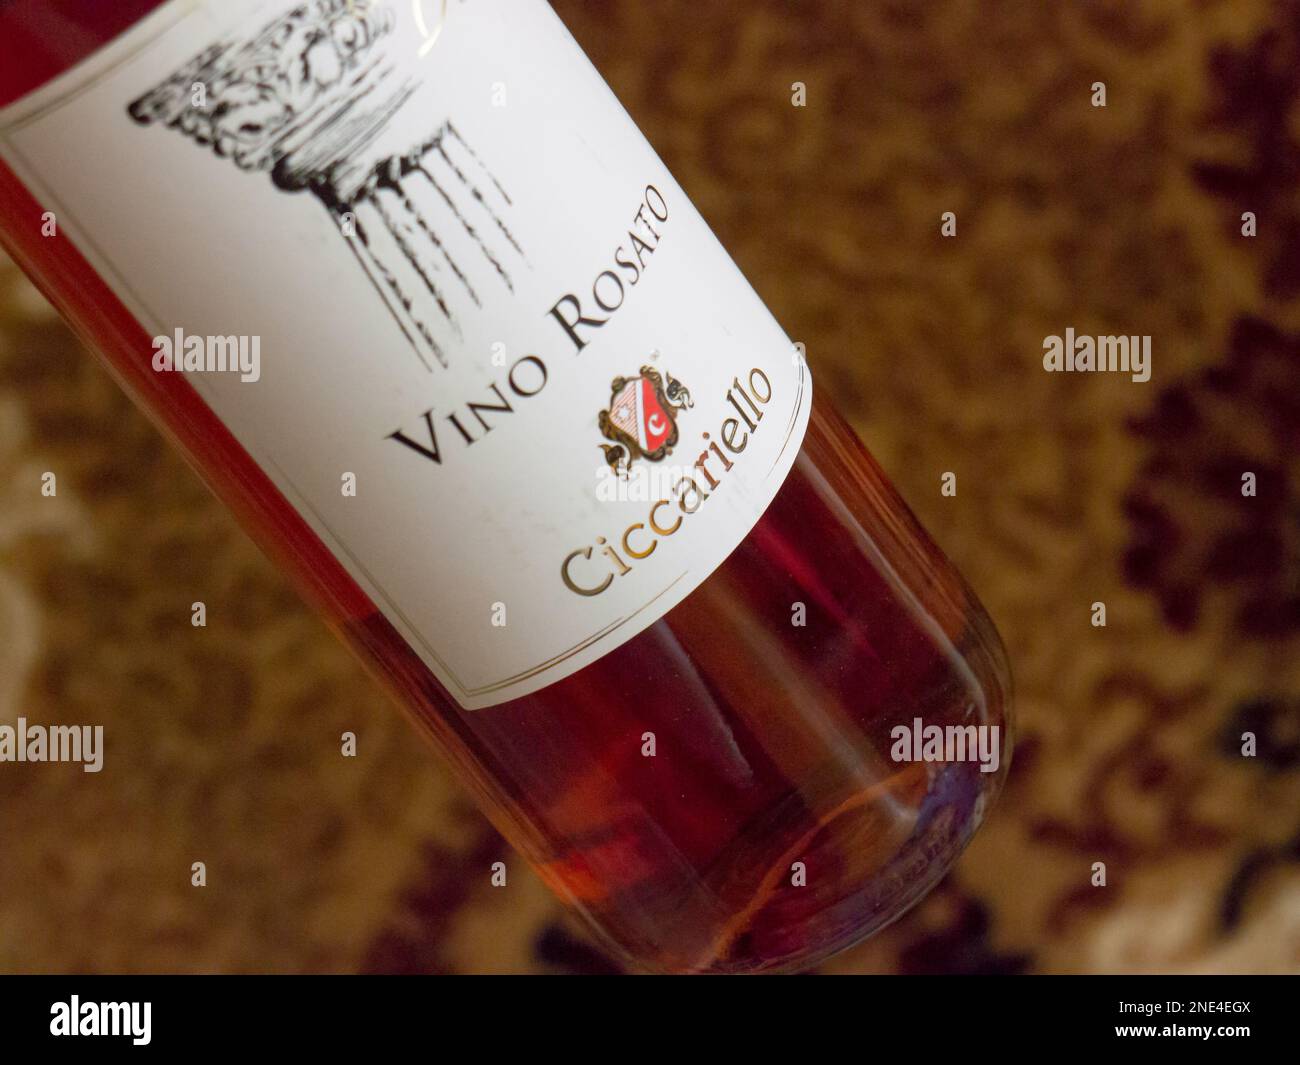 Wine Colli Perini Vino Rosato. 2019. Stock Photo